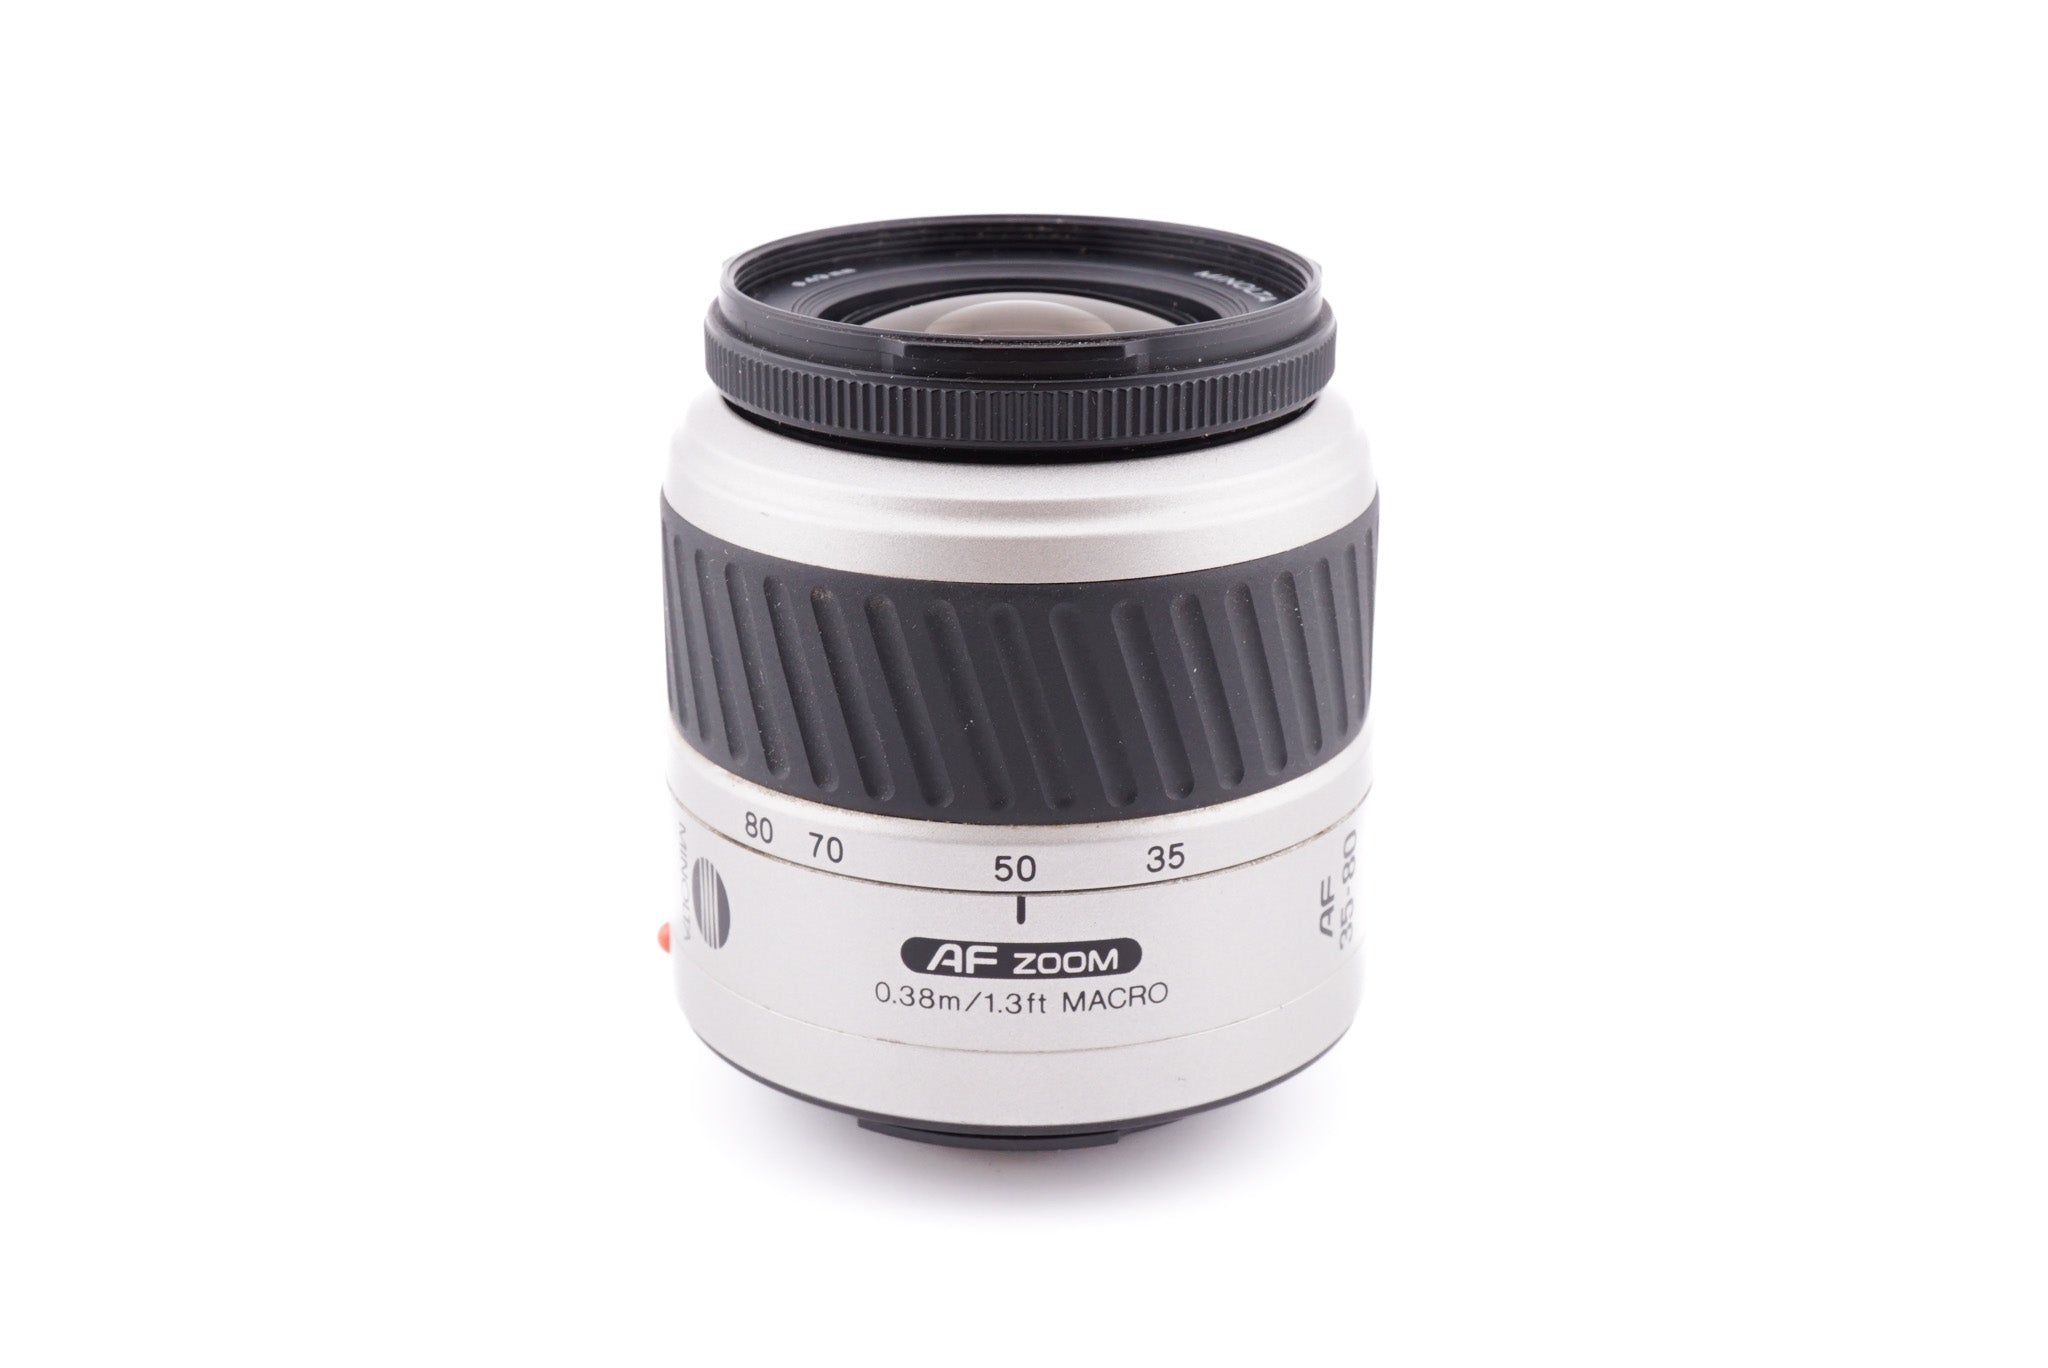 Minolta 35-80mm f4-5.6 AF Zoom II - Lens